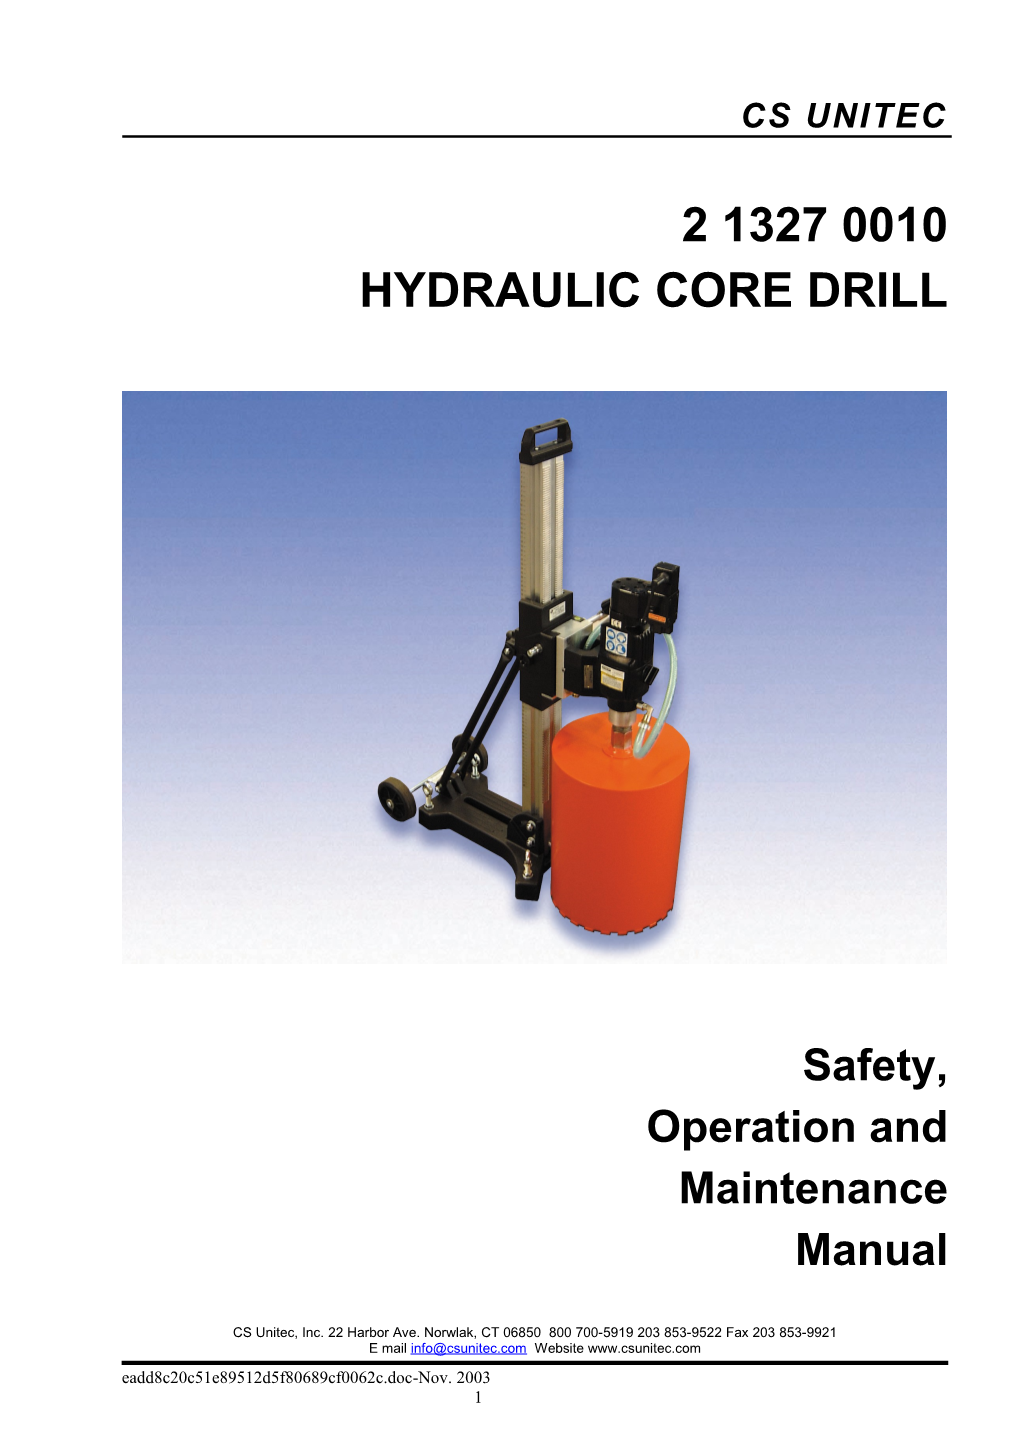 Hydraulic Core Drill